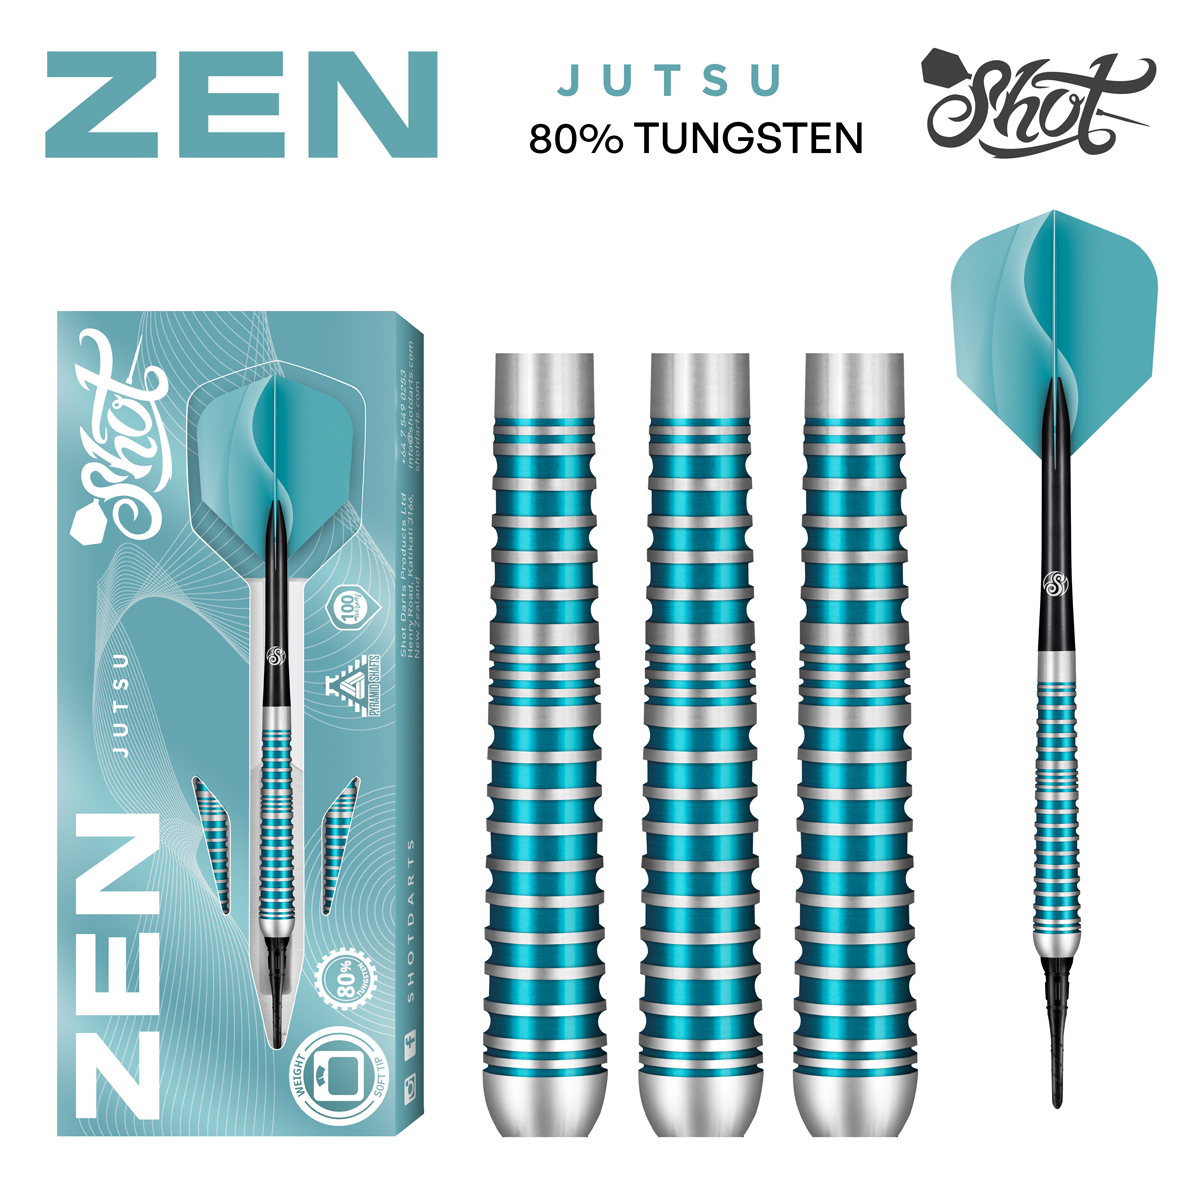 Zen Jutsu 2.0 Soft Tip Dart Set - 80% Tungsten Barrels  